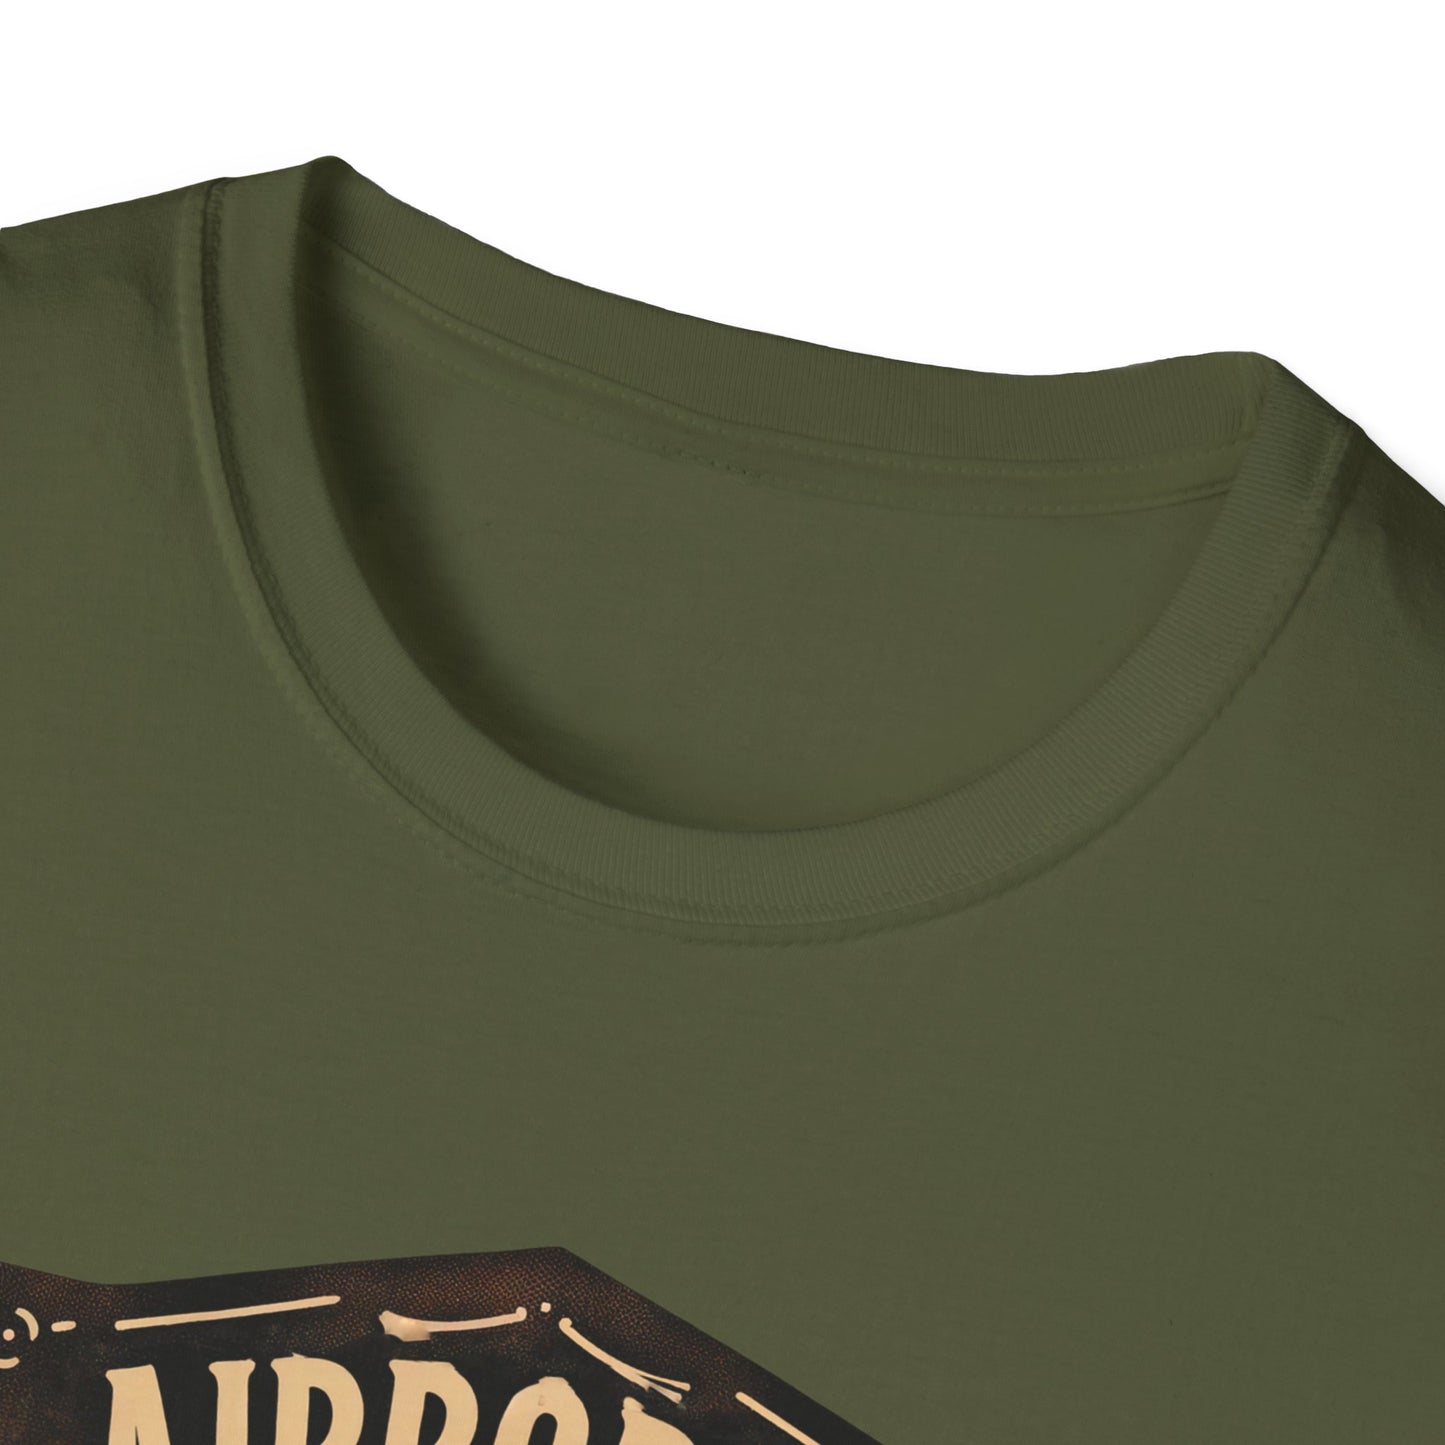 Airborne Life Logo 22 Unisex Softstyle T-Shirt